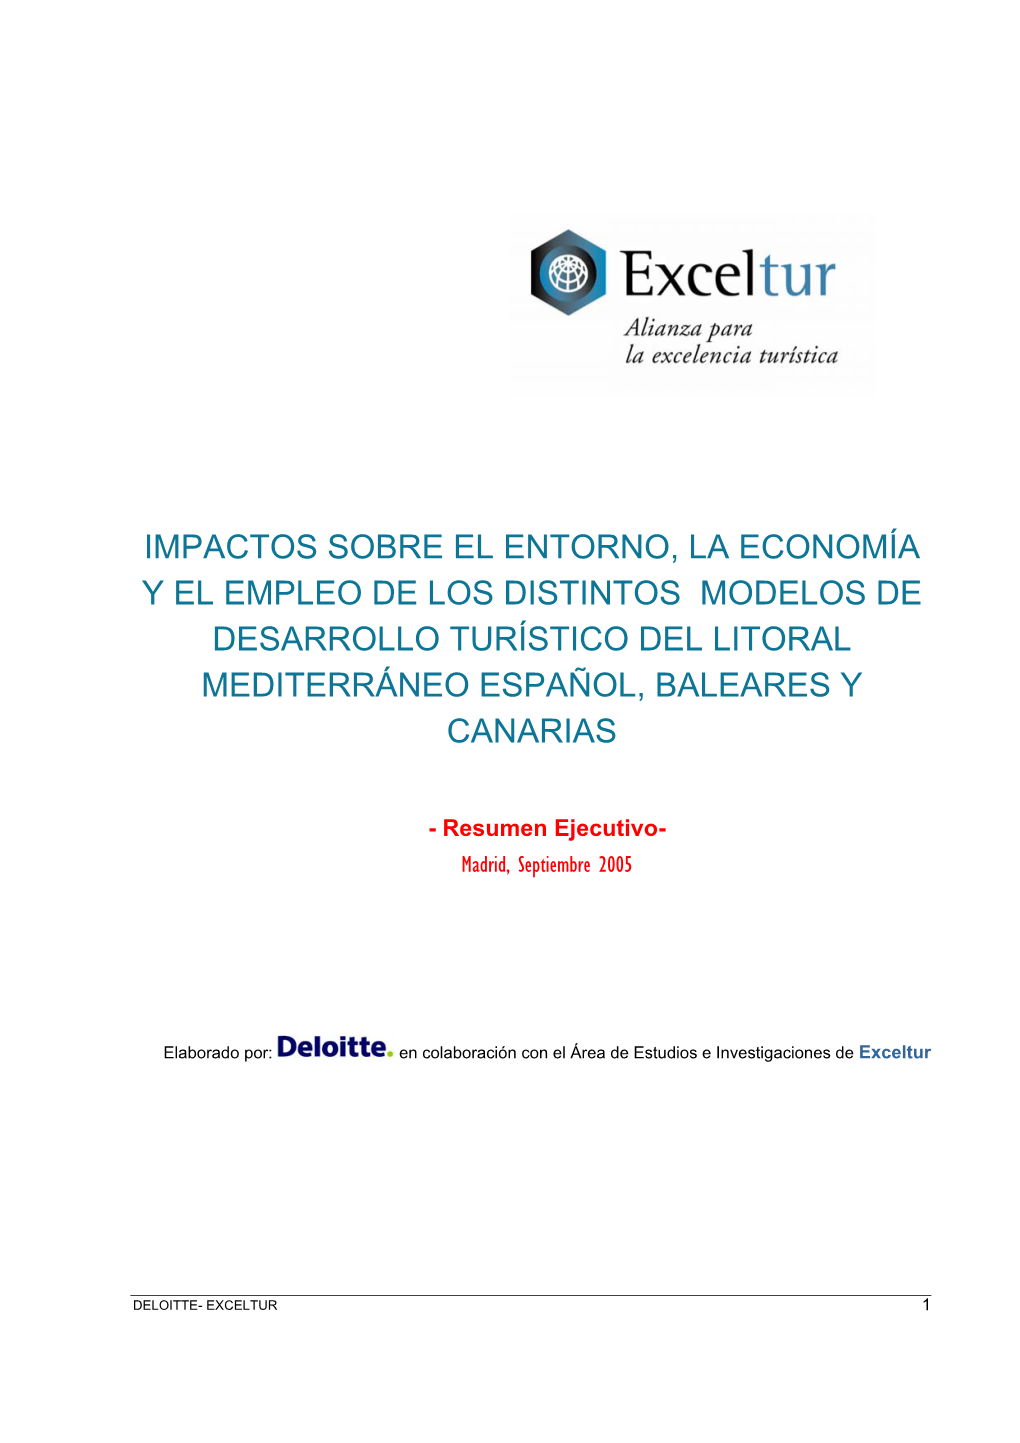 Impactos Sobre El Entorno, La Economía Y El Empleo De Los Distintos Modelos De Desarrollo Turístico Del Litoral Mediterráneo Español, Baleares Y Canarias